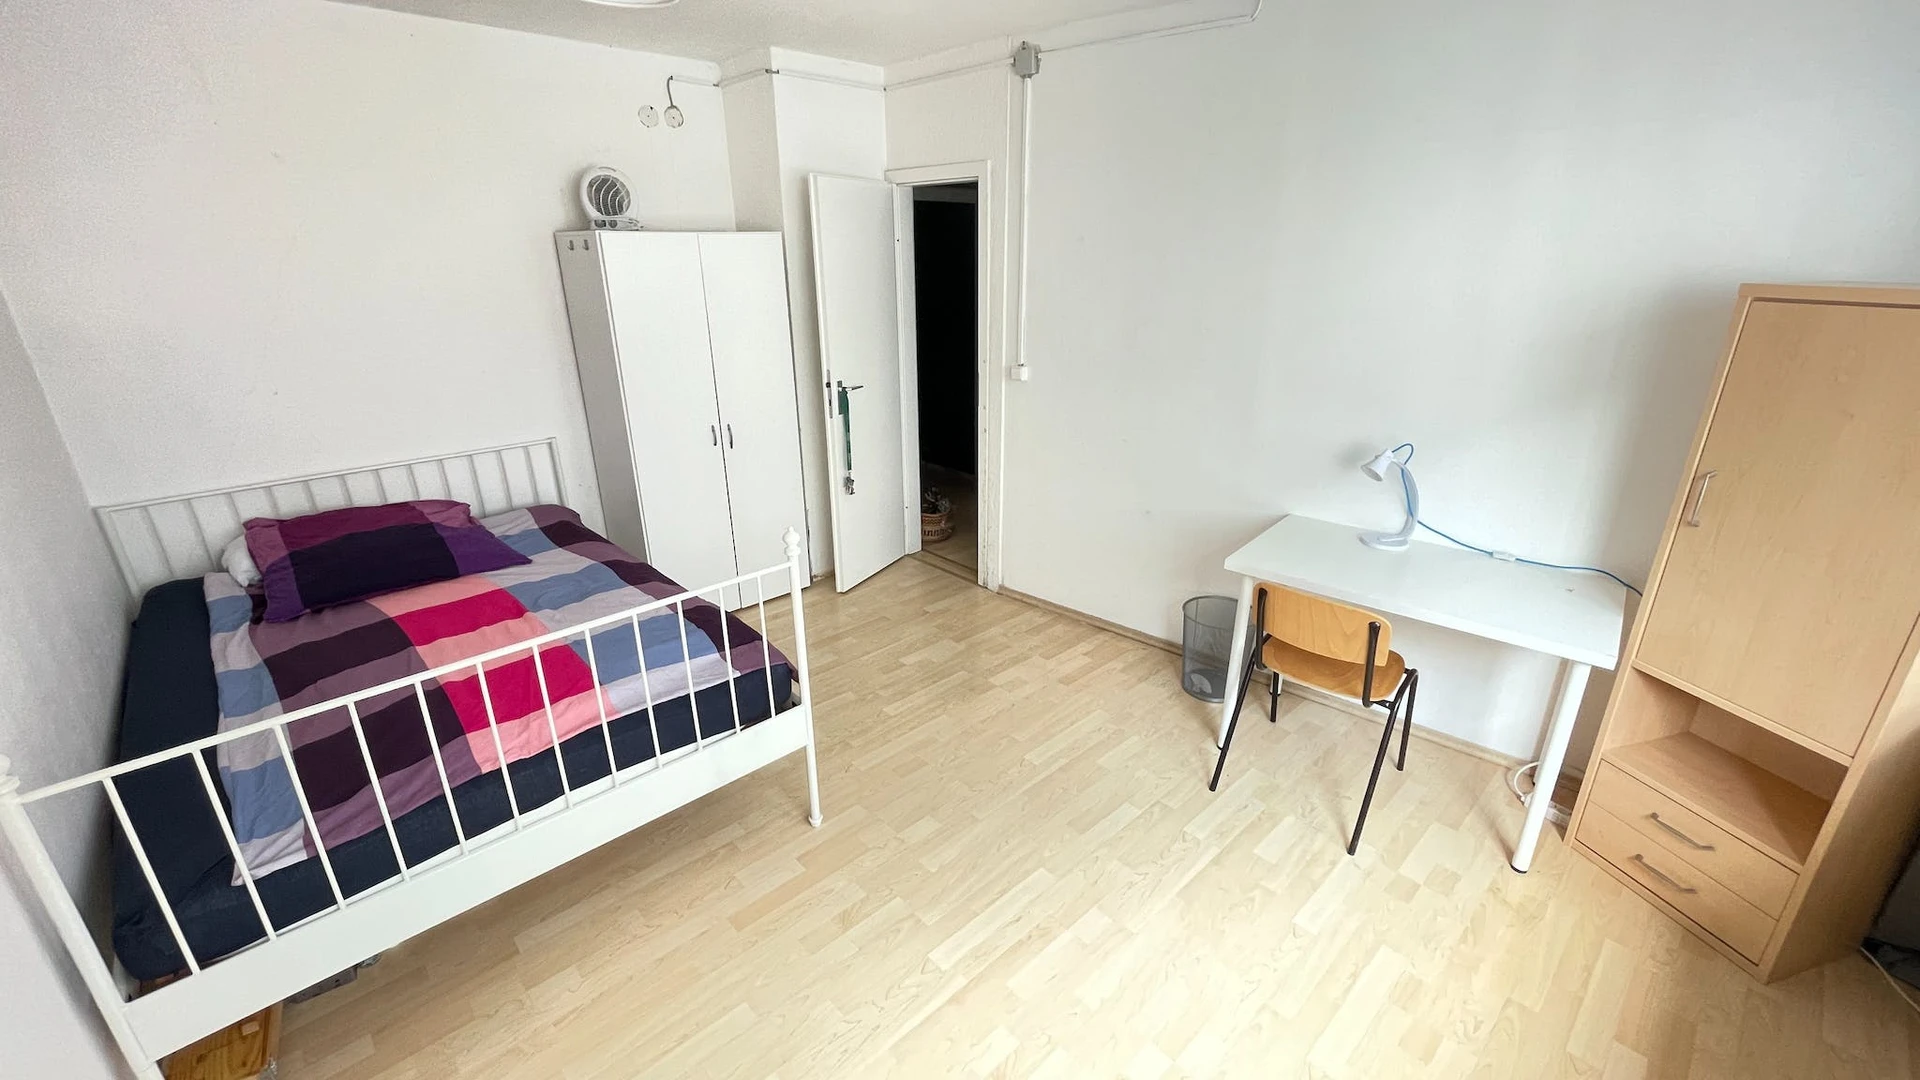 Quarto para alugar num apartamento partilhado em Bremen